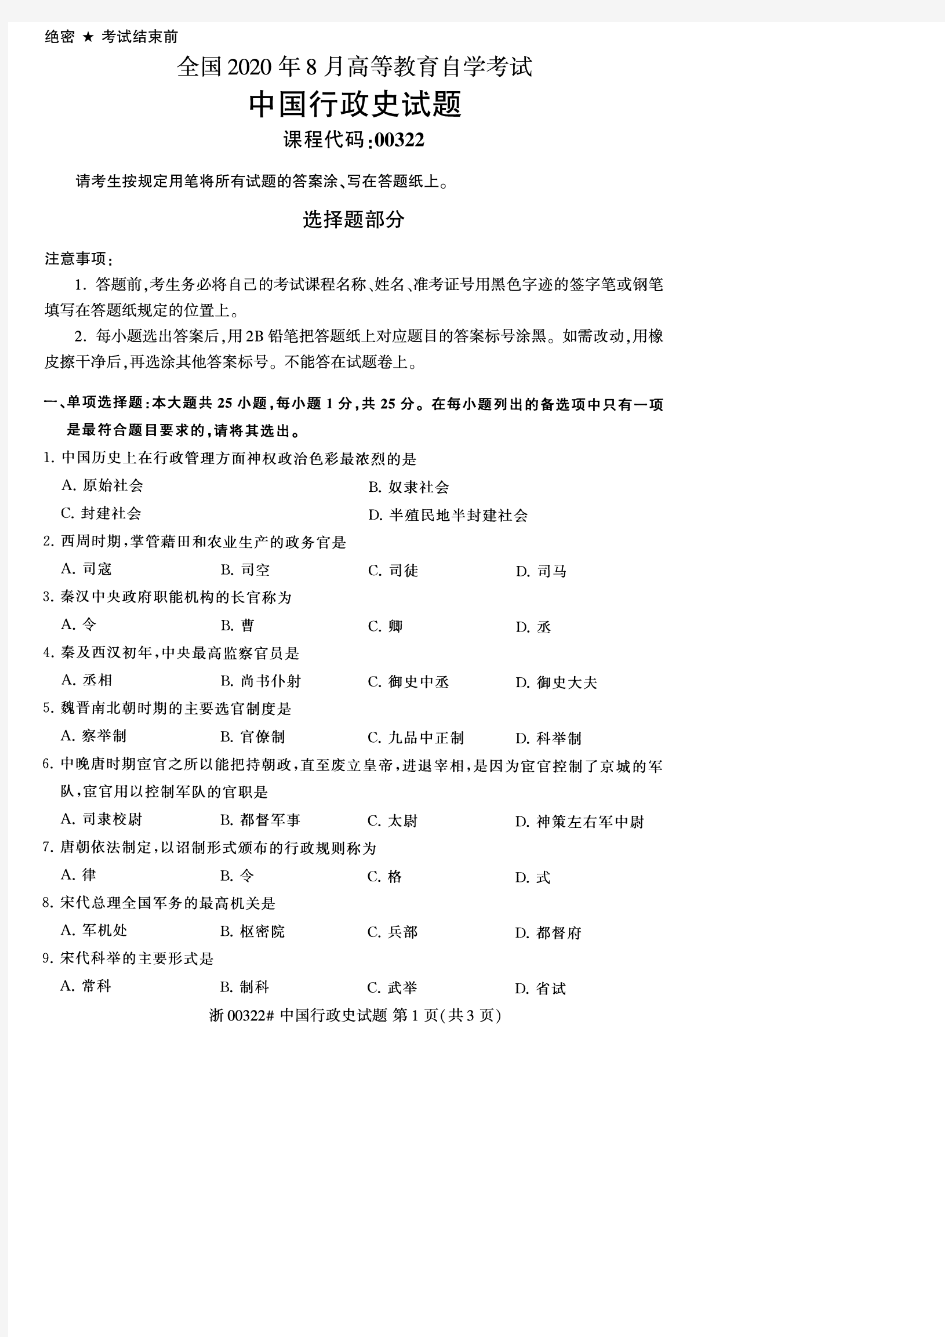 【自考真题10套】中国行政史00322试题(2013年10月-2020年8月)